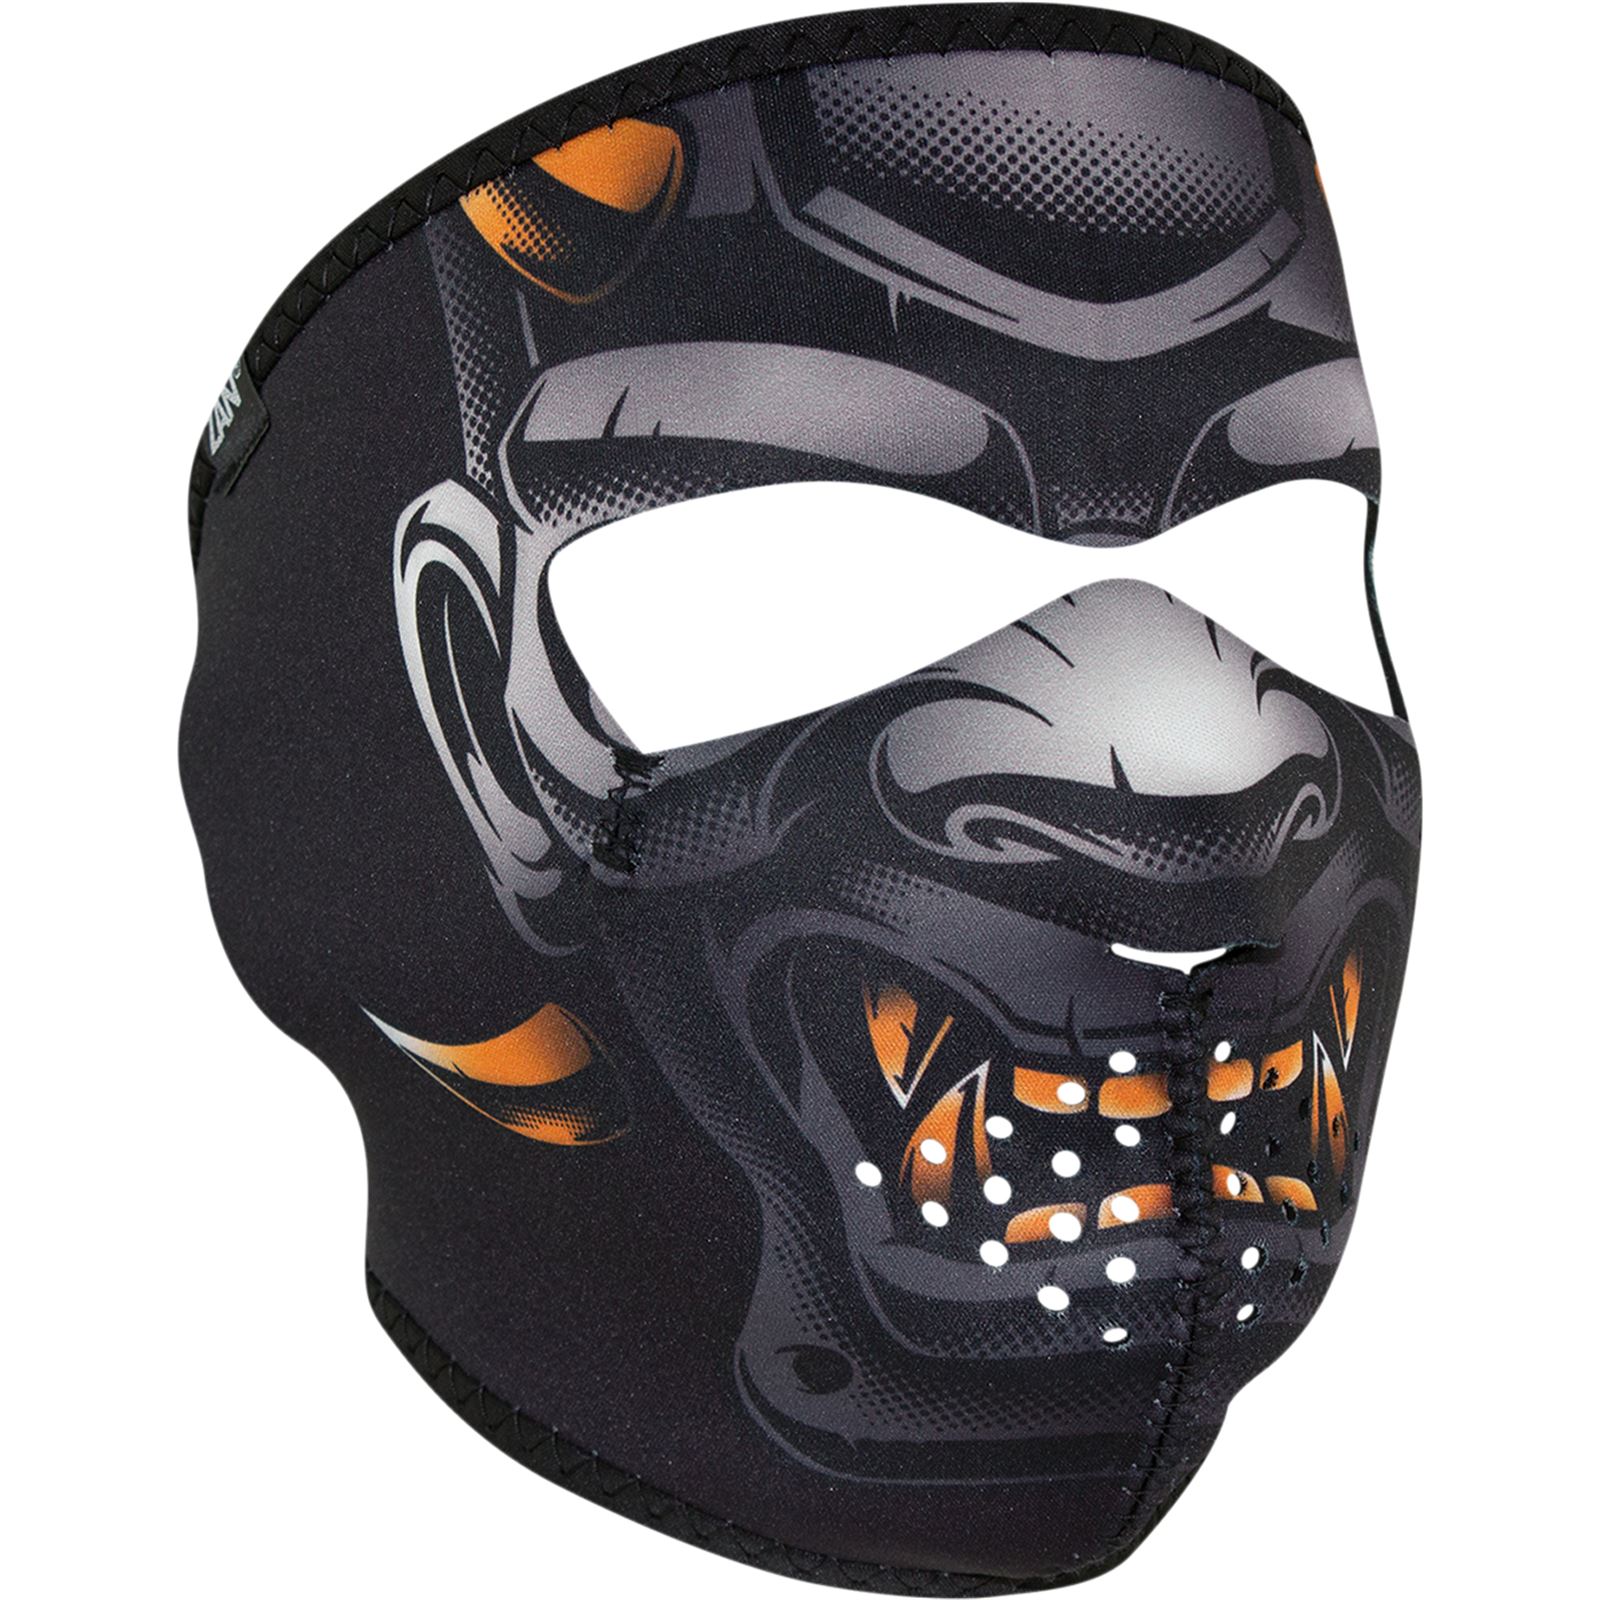 Zan Face Mask